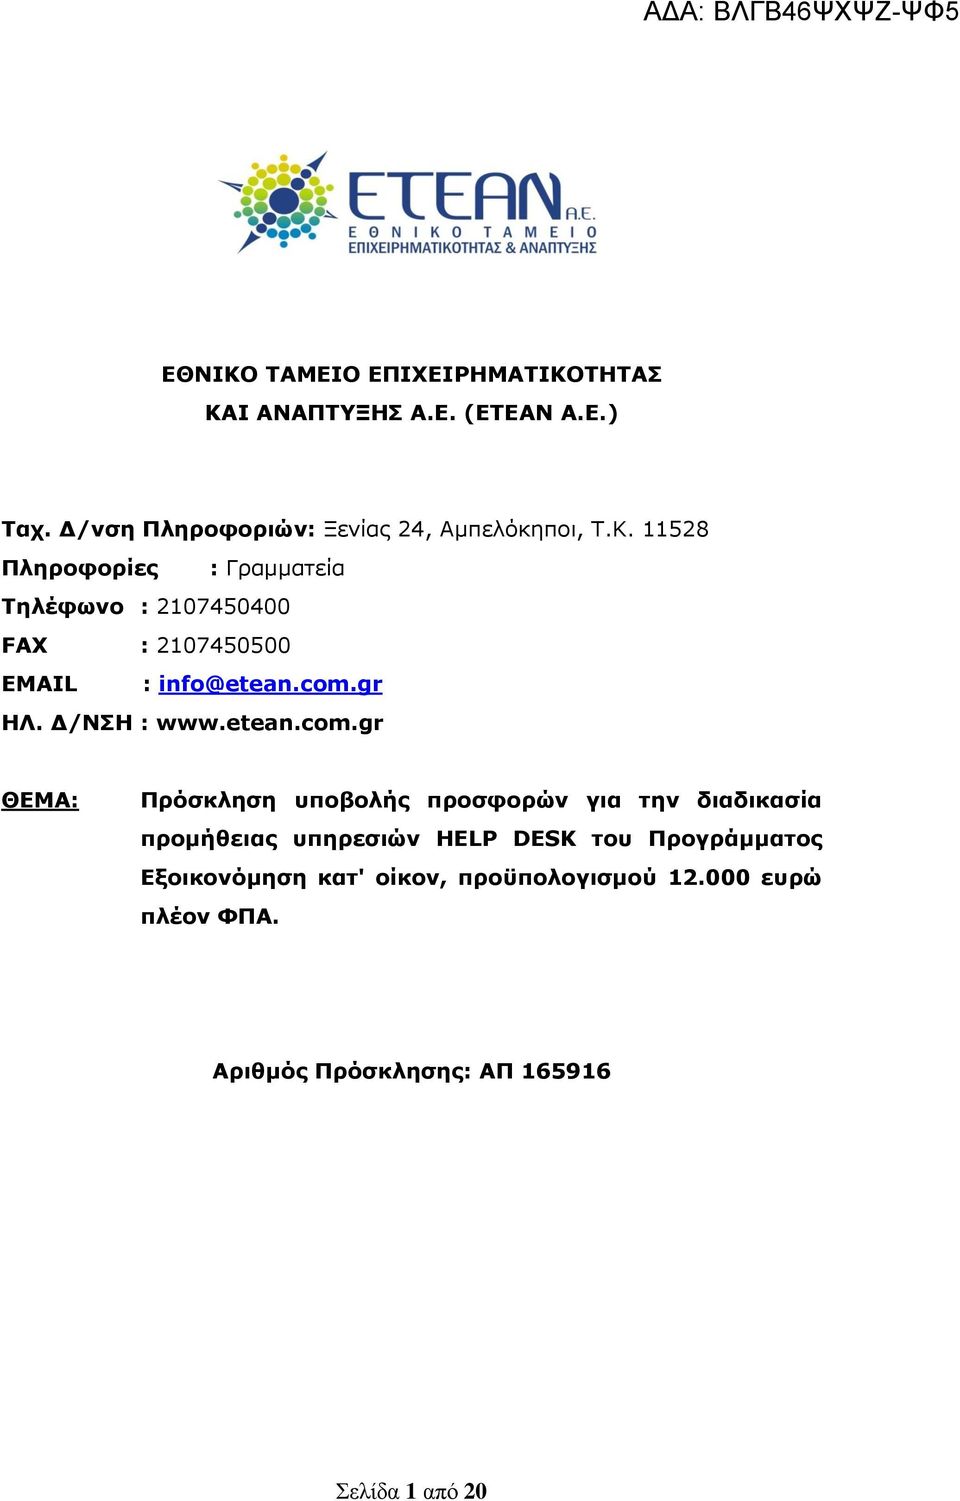 11528 Πληροφορίες : Γραμματεία Τηλέφωνο : 2107450400 FAX : 2107450500 EMAIL : info@etean.com.gr ΗΛ. Δ/ΝΣΗ : www.